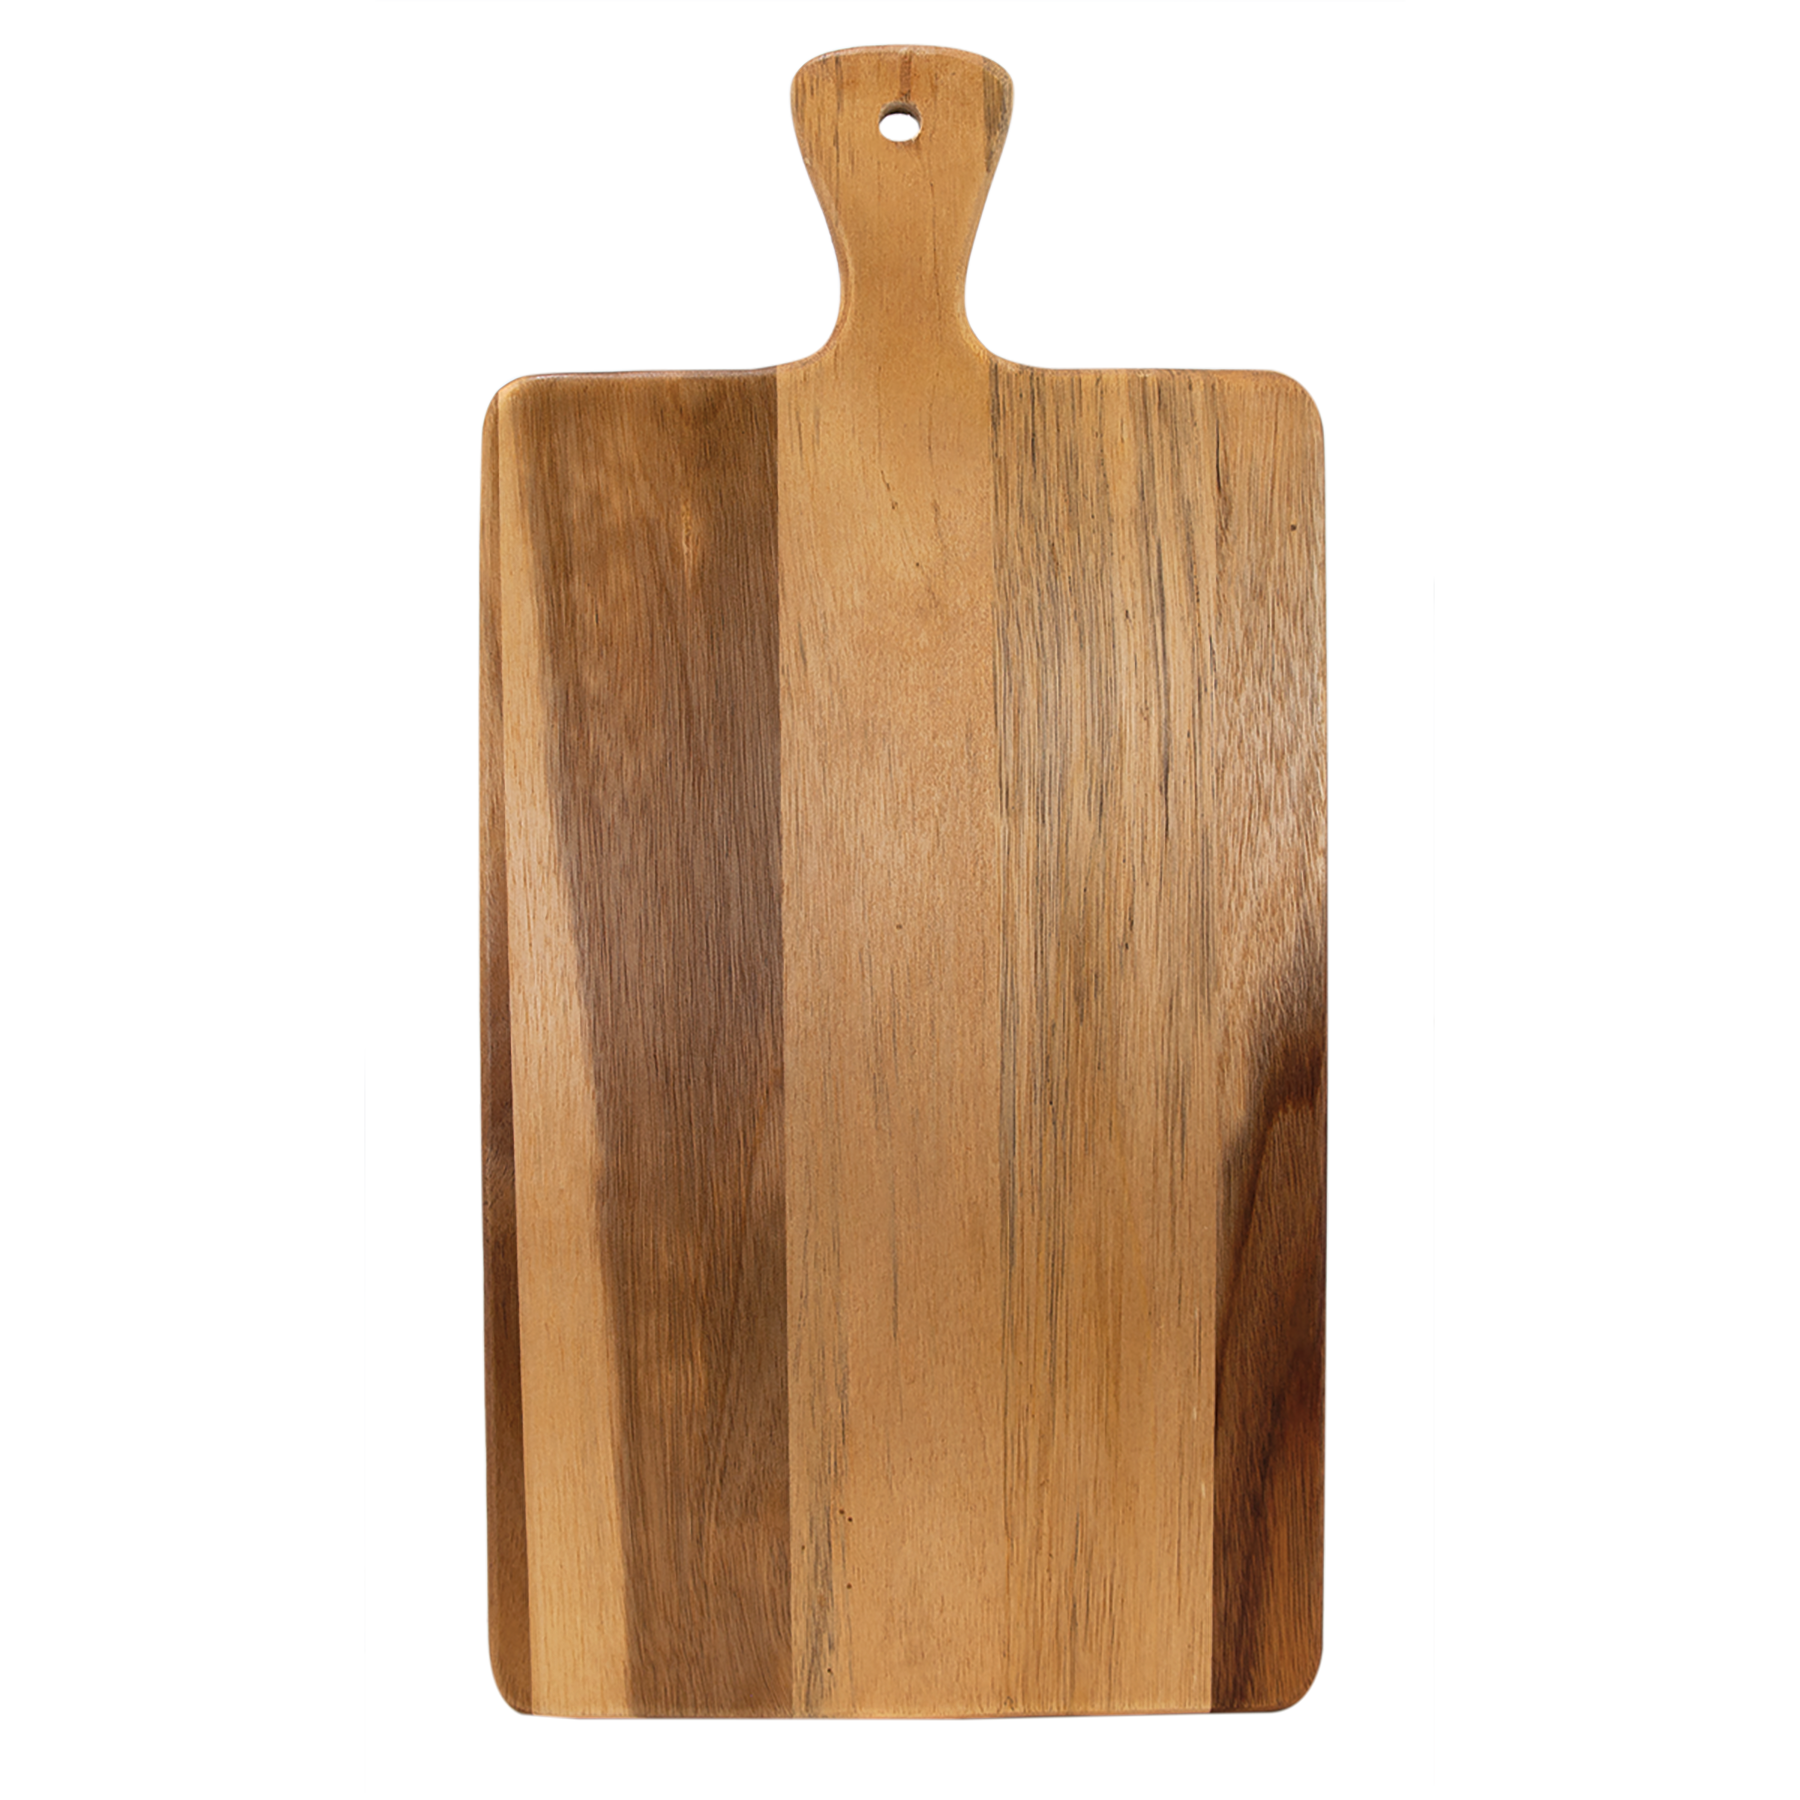 16" x 7 3/4" Acacia Wood/Slate Serving Board